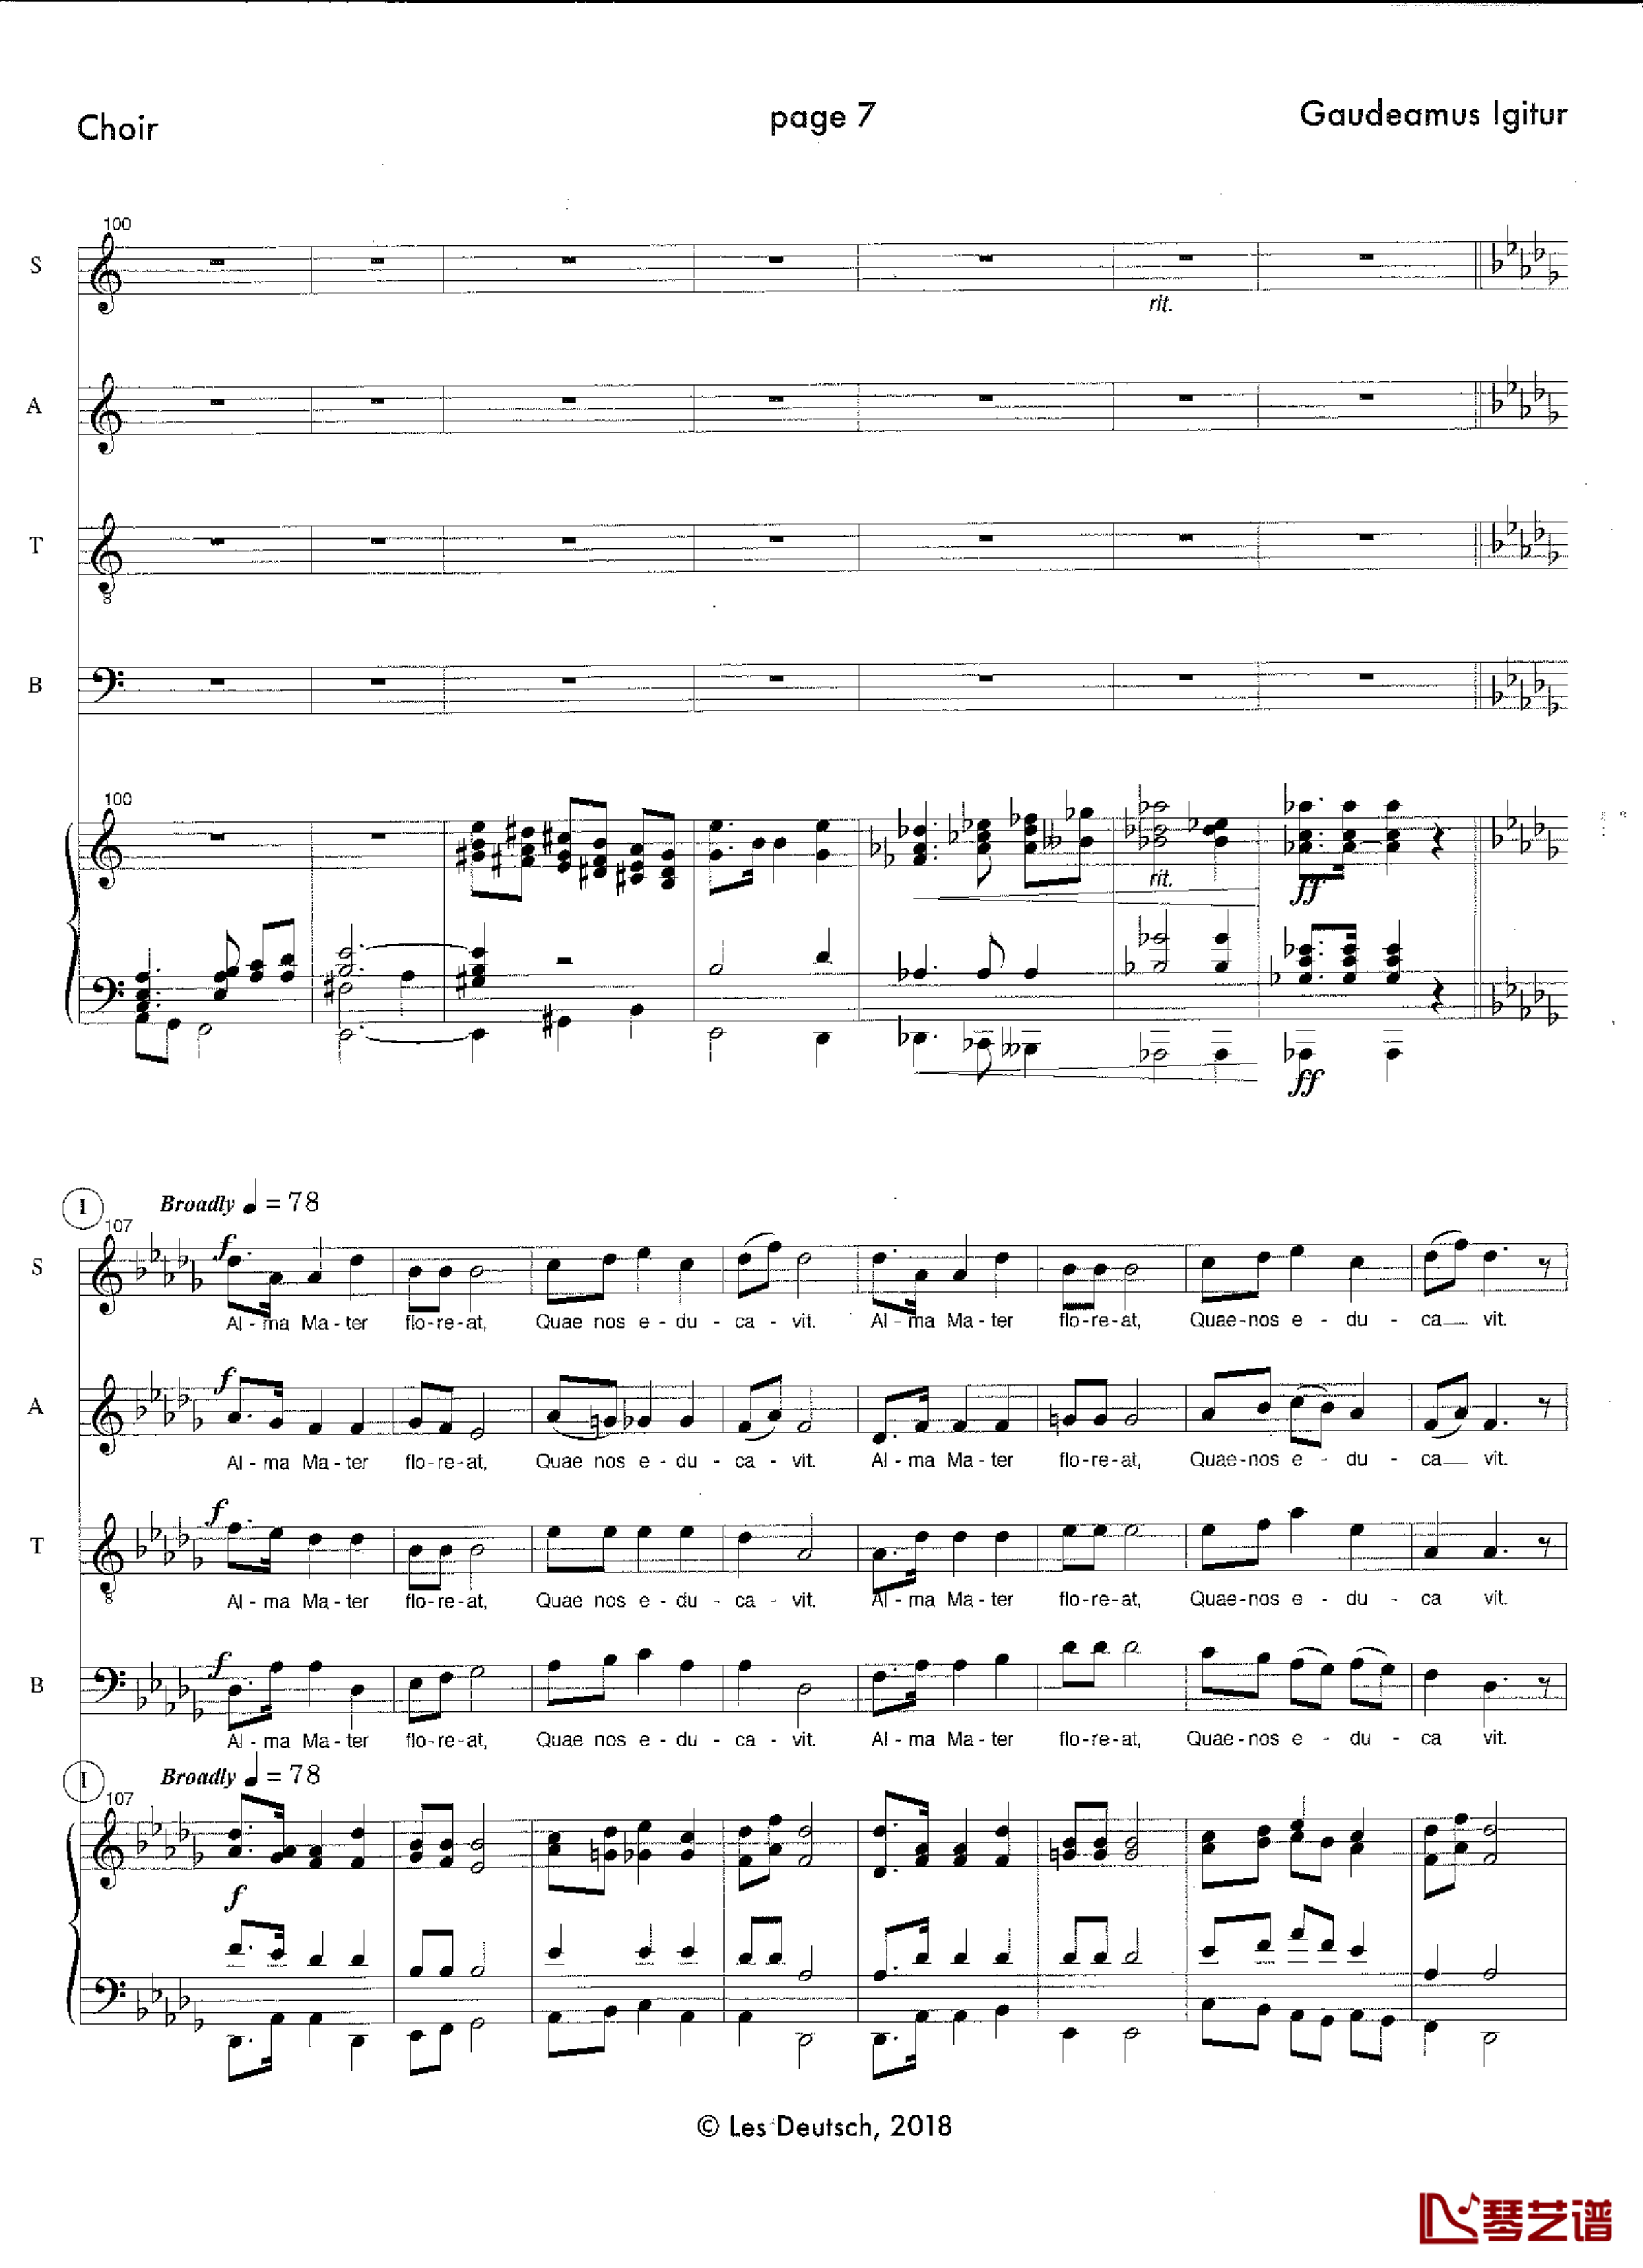 Gaudeamus Igitur钢琴谱-Les Deutsch7